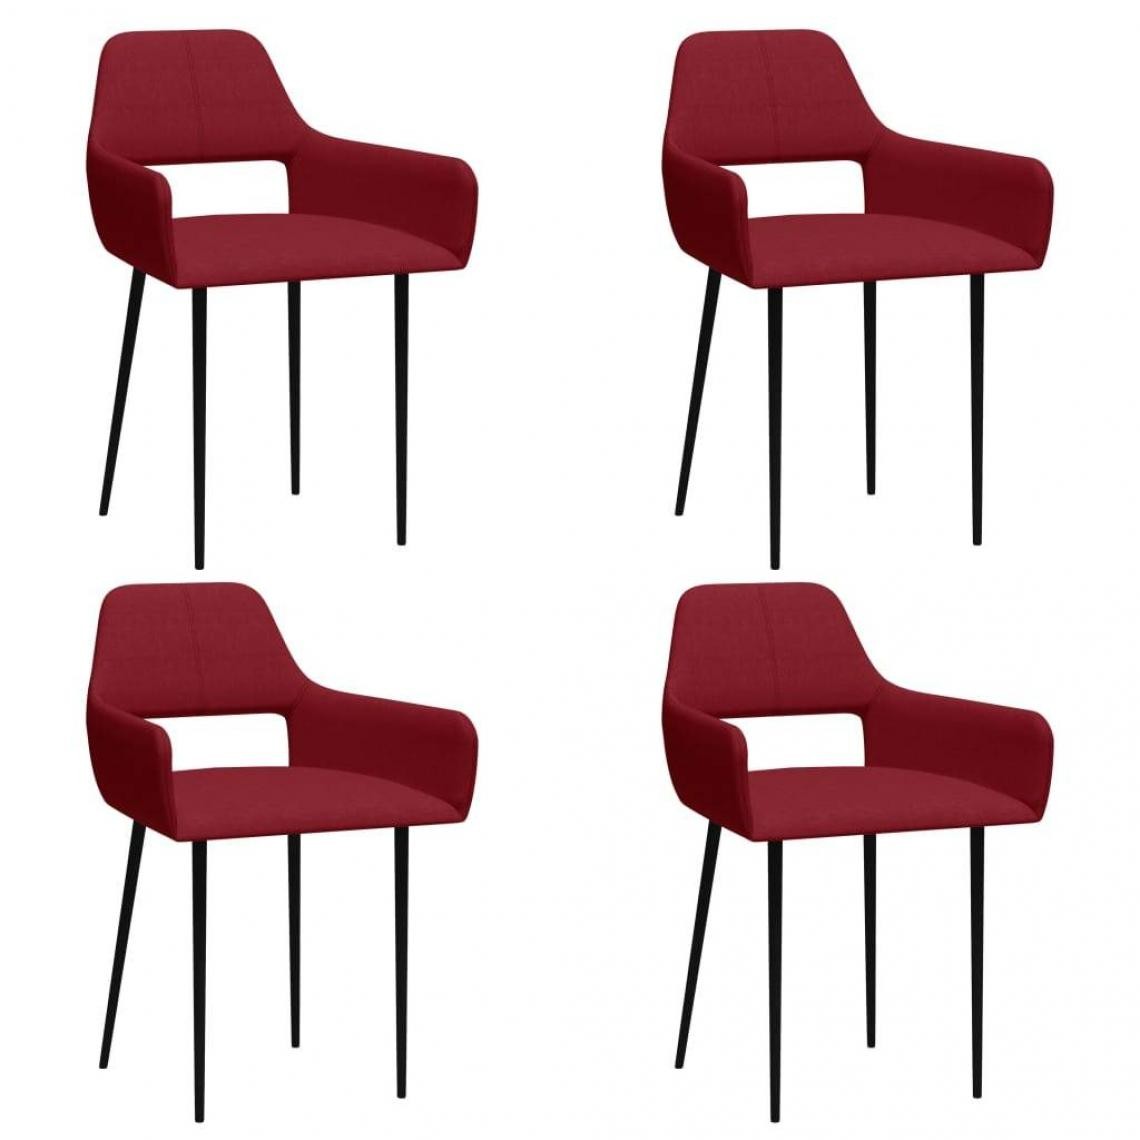 Decoshop26 - Lot de 4 chaises de salle à manger cuisine design rétro tissu rouge bordeaux CDS021949 - Chaises